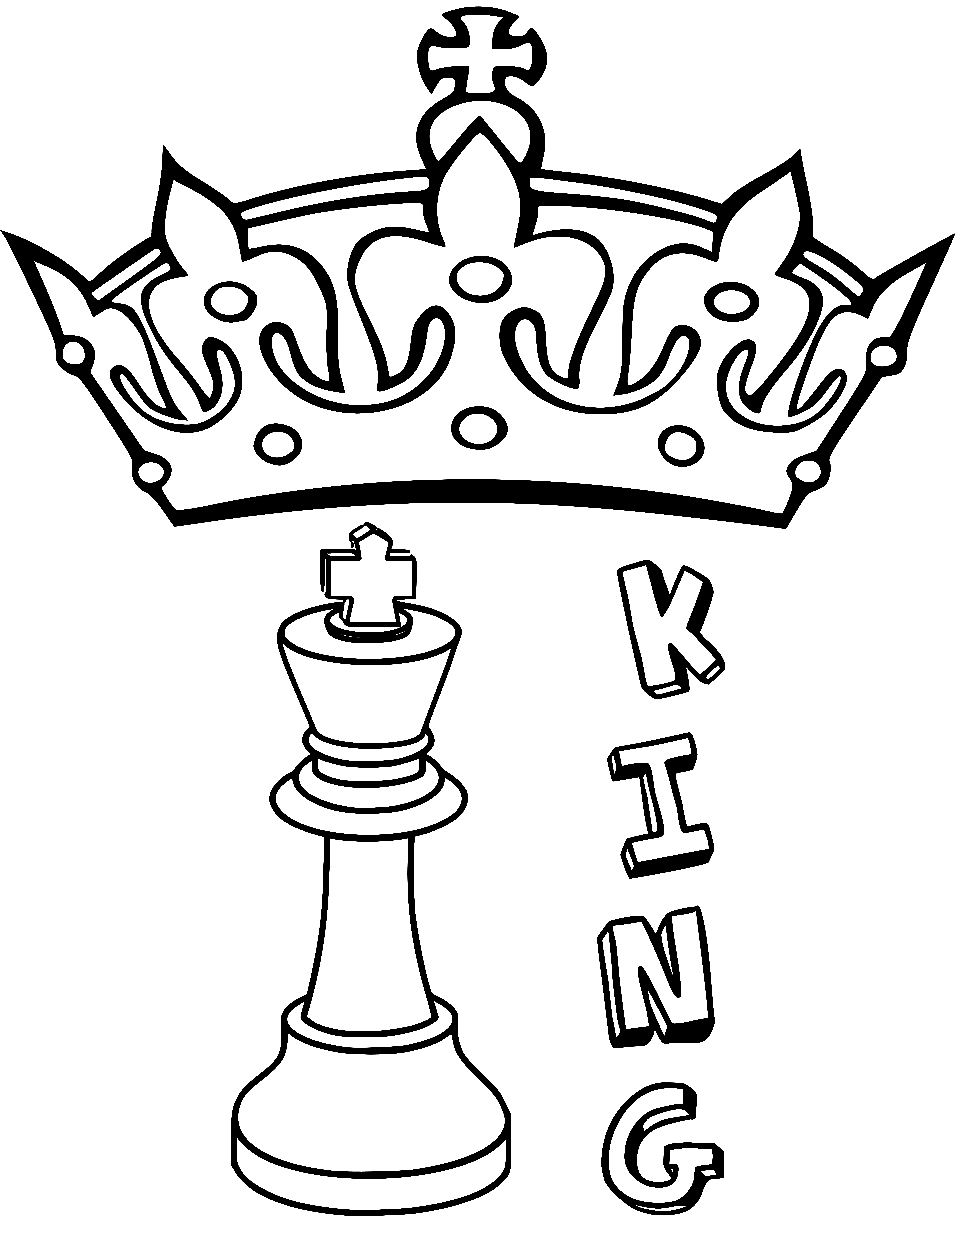 国际象棋中的国王棋子